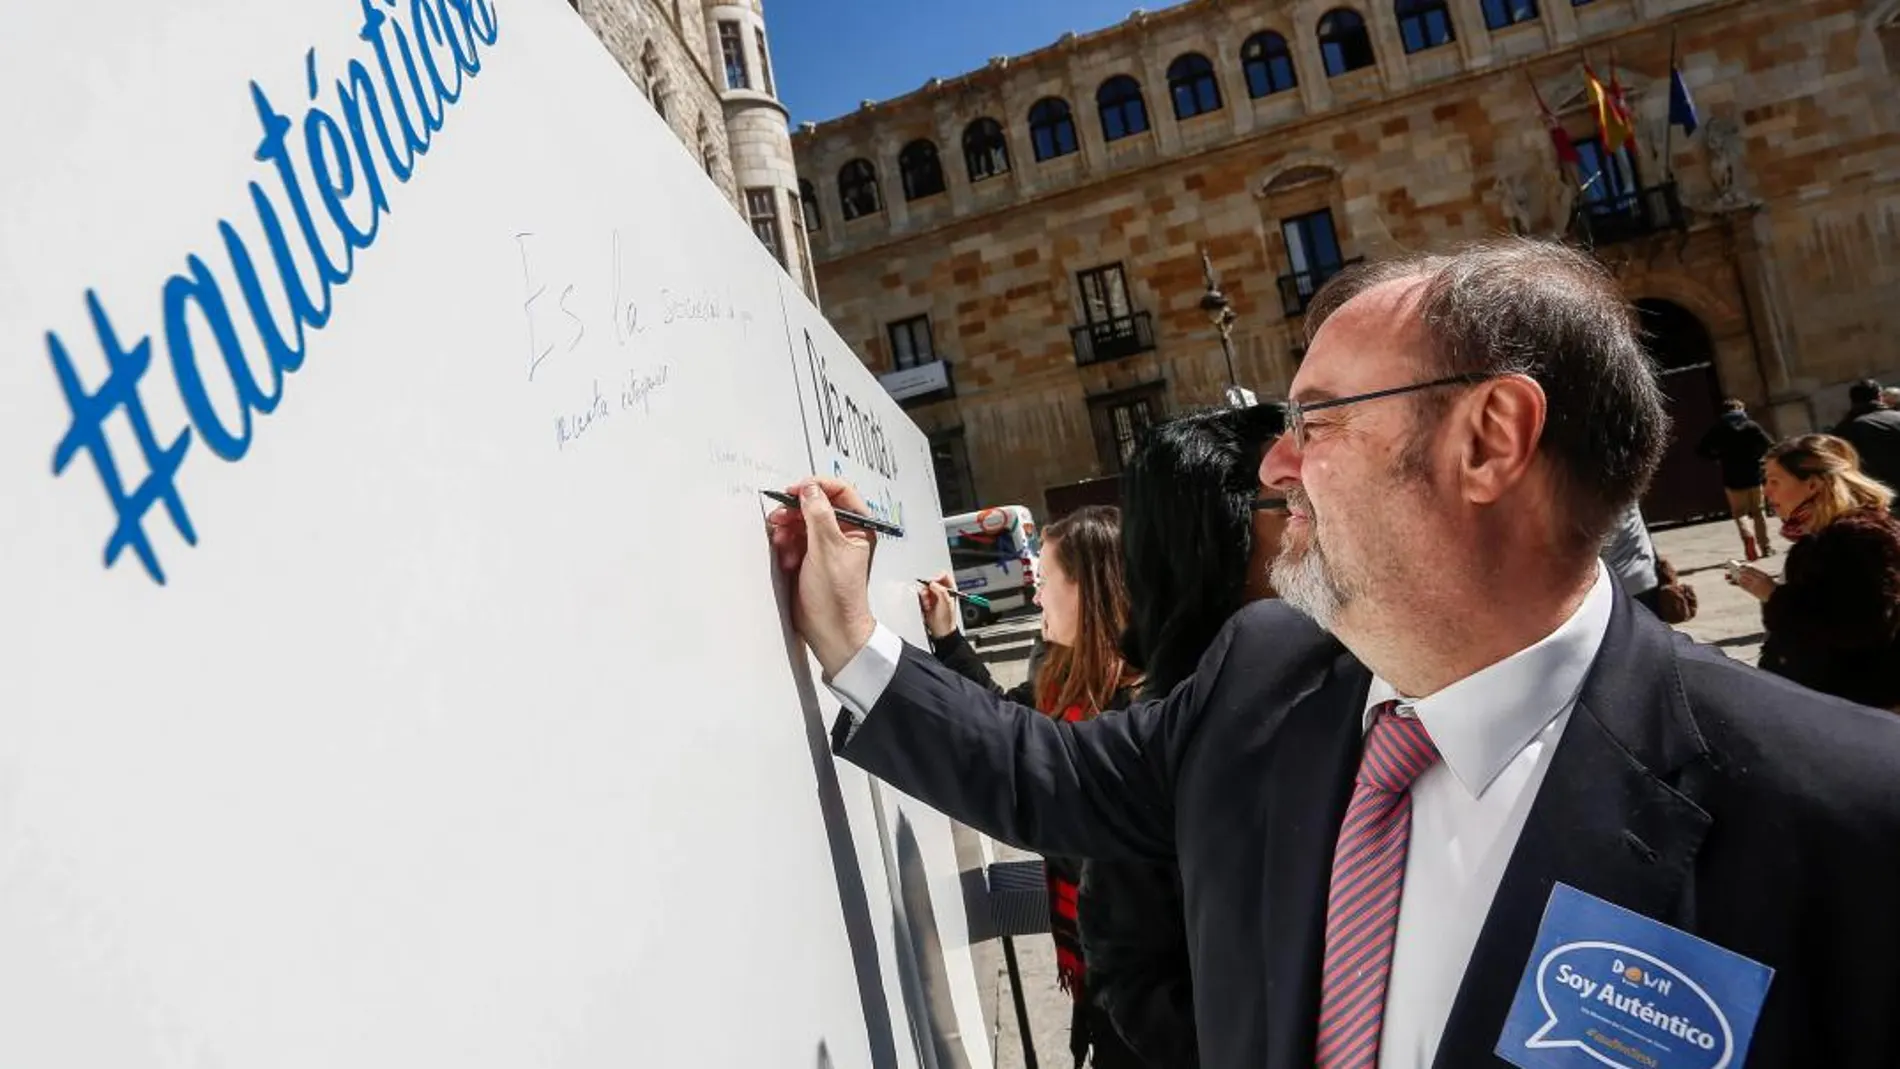 Fernando Rey firma en favor de la plena inclusión de las personas con Down, durante el acto institucional en León